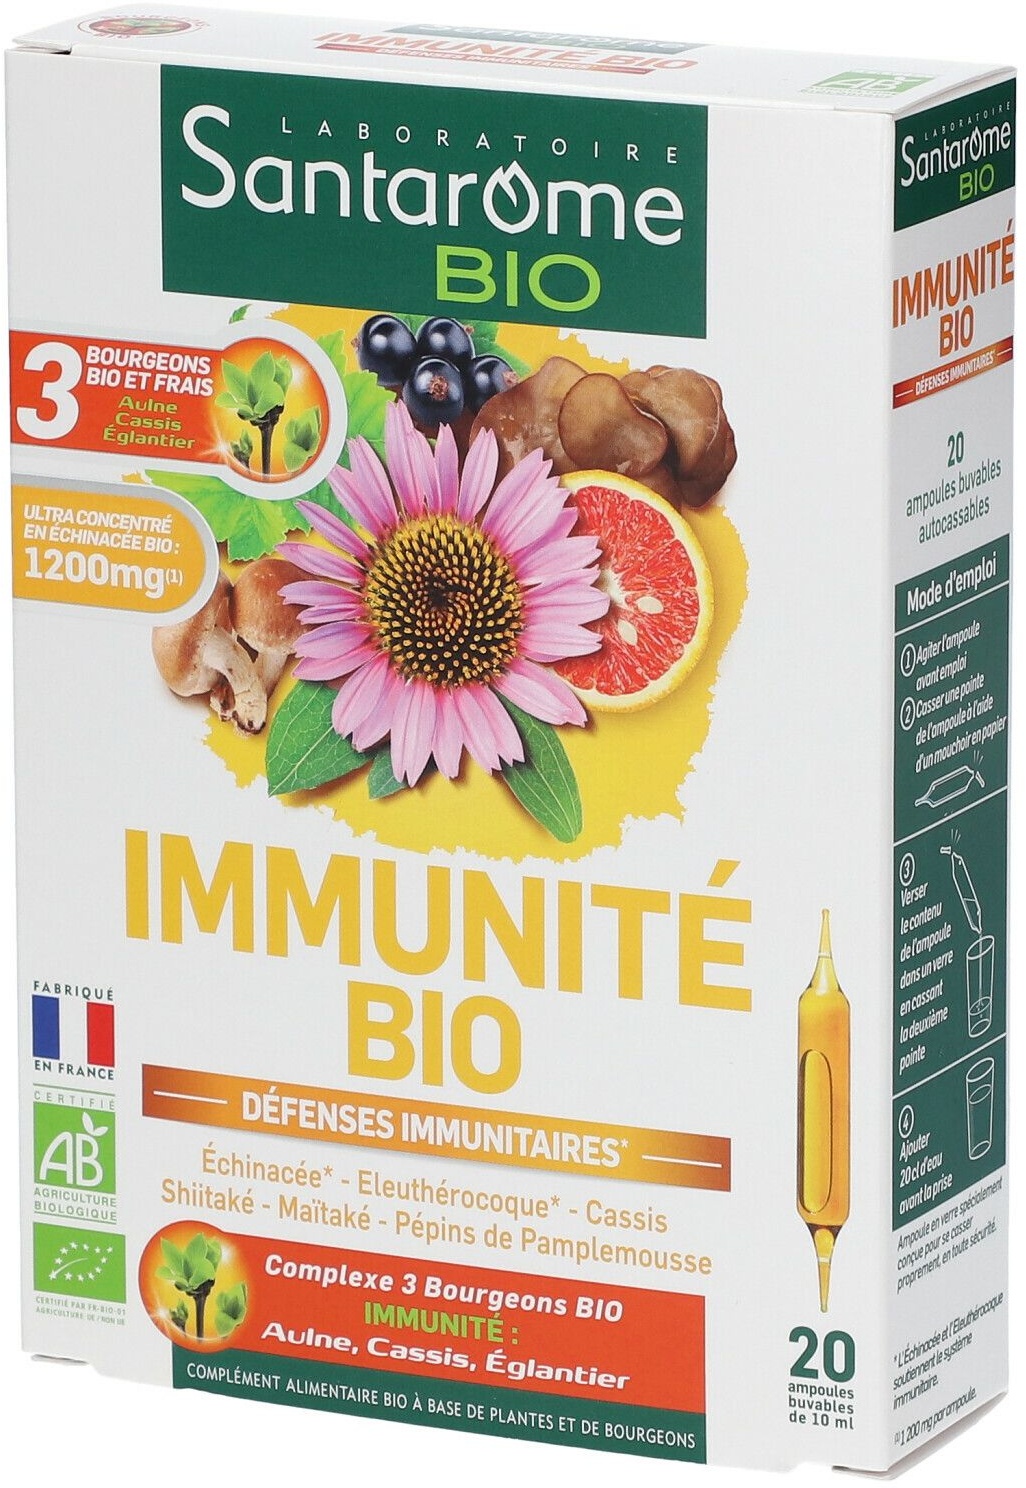 Santarome Bio Immunité bio Défenses immunitaires 20x10 ml ampoule(s) buvable(s)